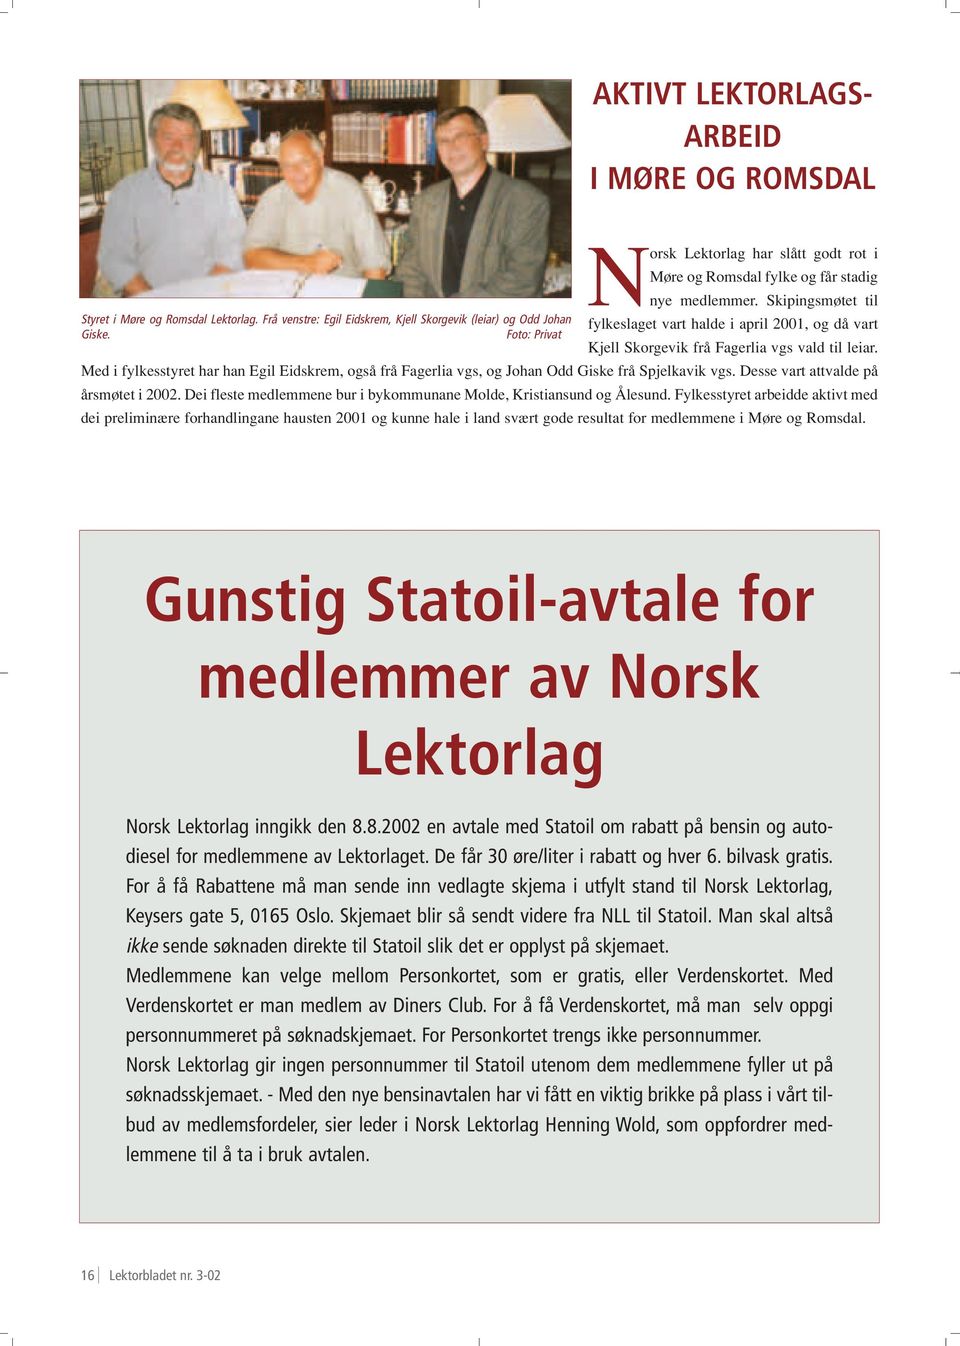 Med i fylkesstyret har han Egil Eidskrem, også frå Fagerlia vgs, og Johan Odd Giske frå Spjelkavik vgs. Desse vart attvalde på årsmøtet i 2002.